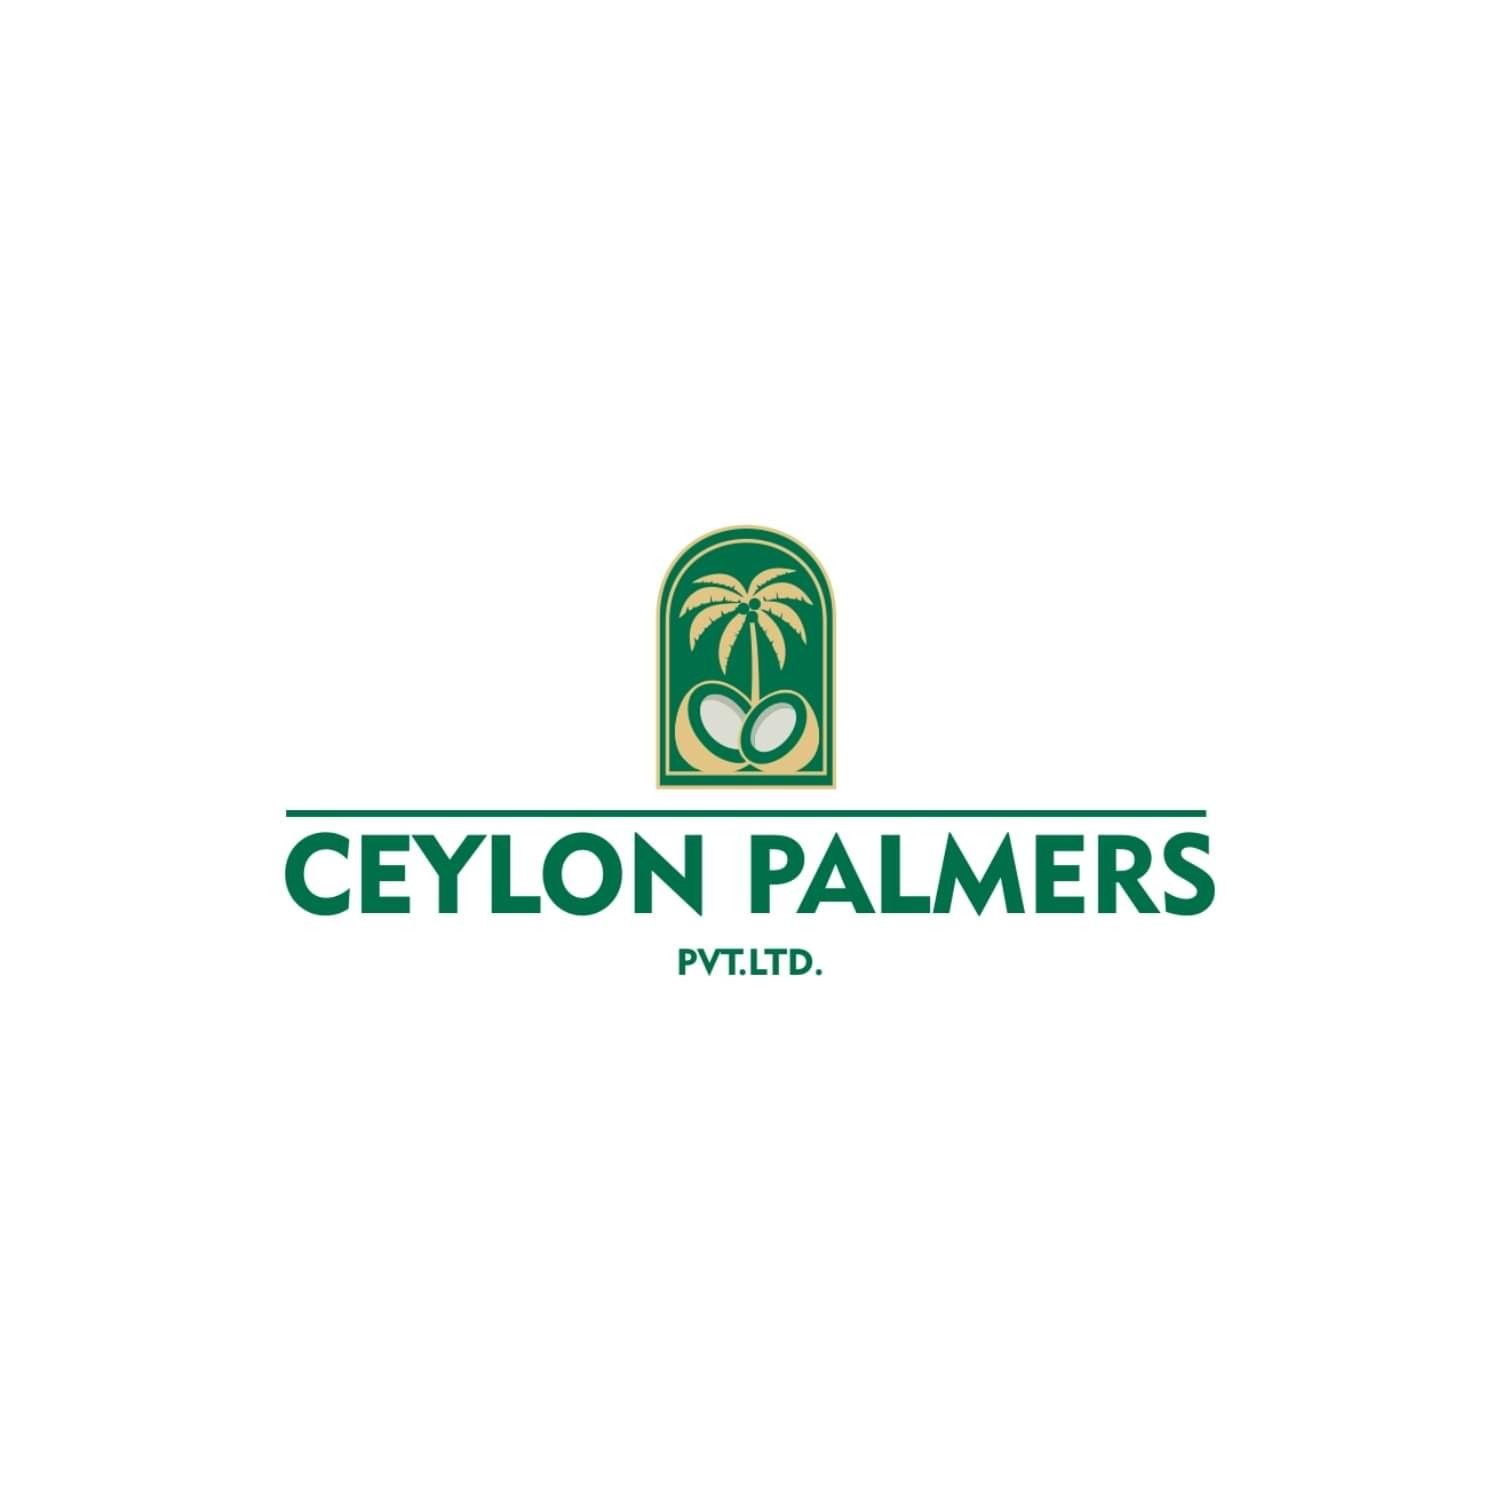 Ceylon Palmers